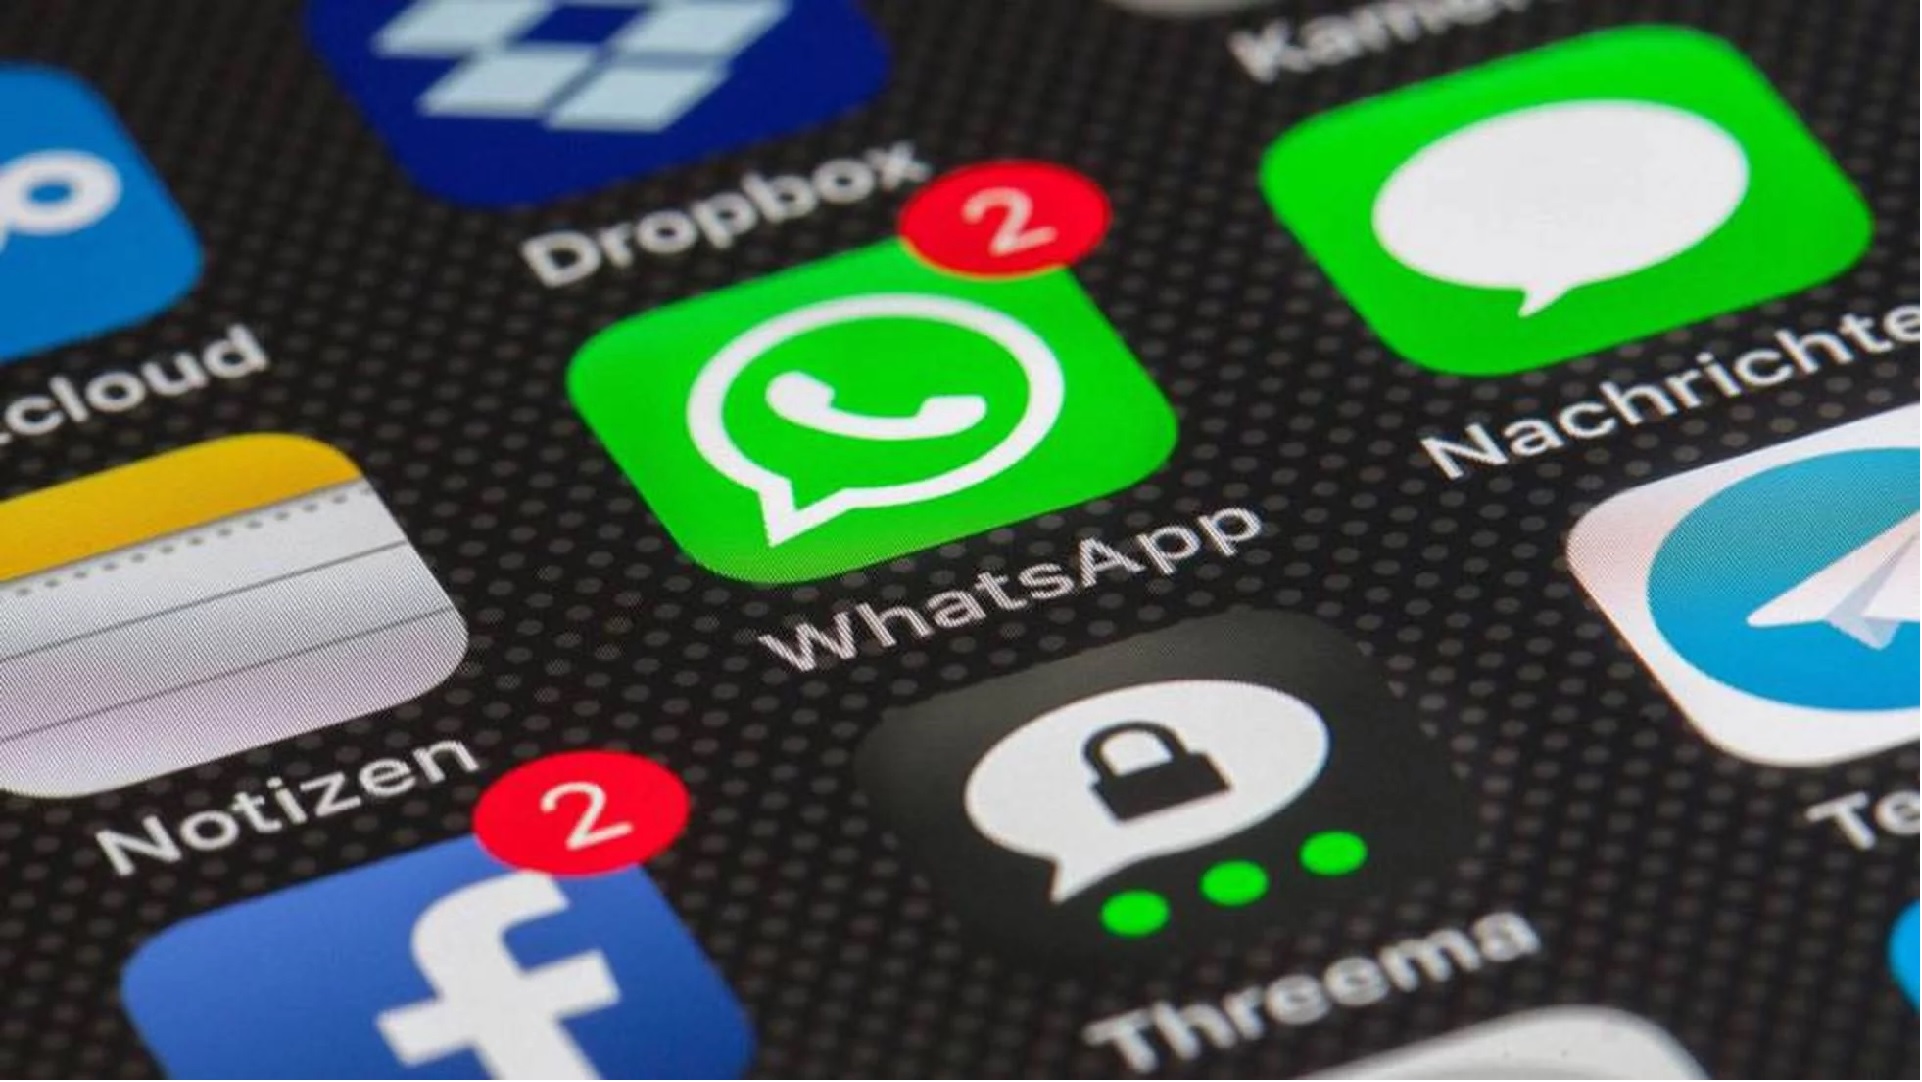 WhatsApp começa a liberar grupos com 512 pessoas